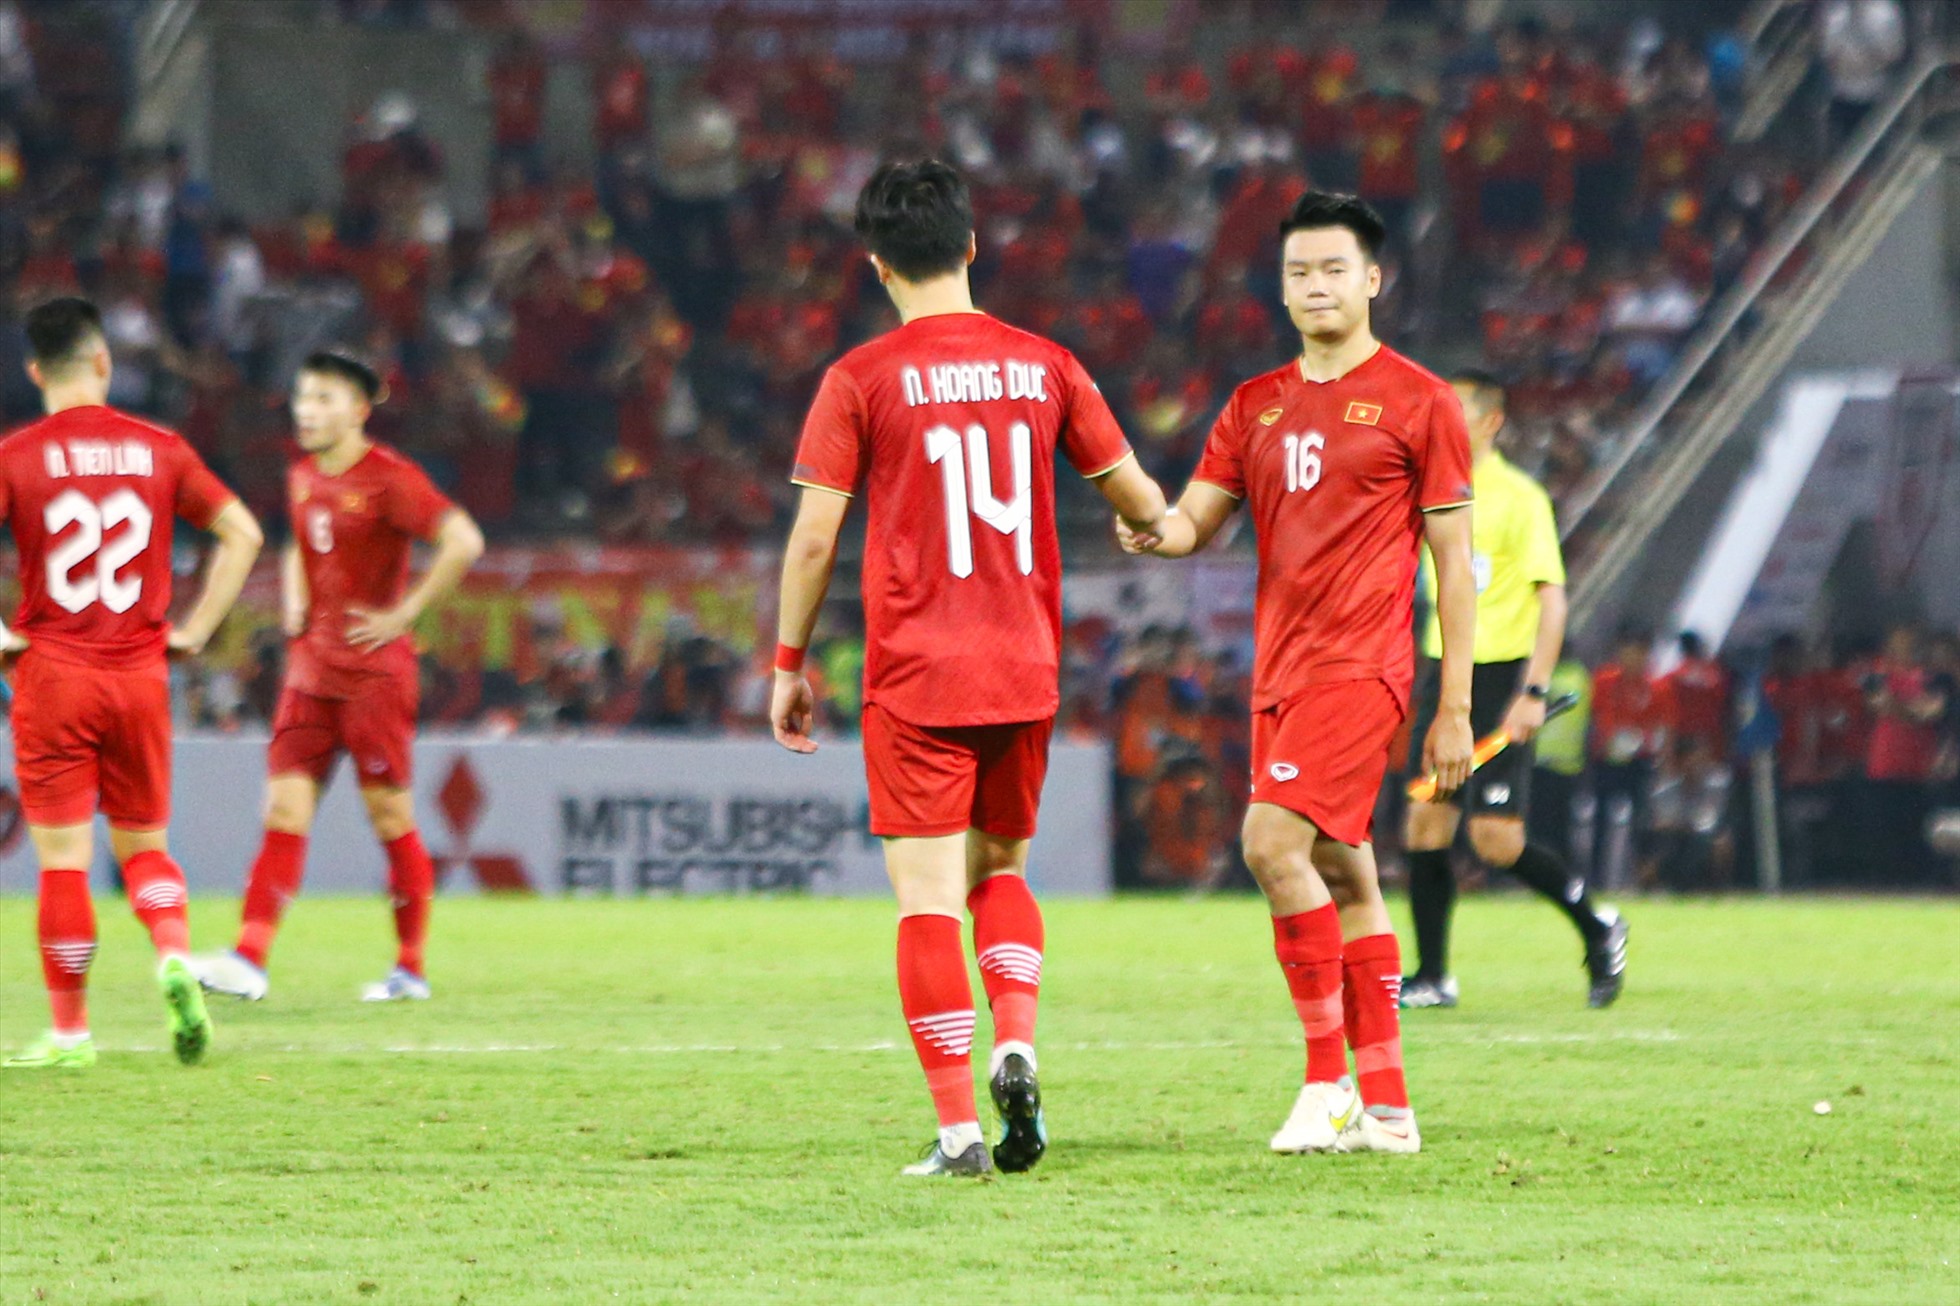 Dù thất bại nhưng các cầu thủ của tuyển Việt Nam vẫn không gục ngã. Từng cầu thủ thay phiên động viên lẫn nhau sau khi trận đấu khép lại.